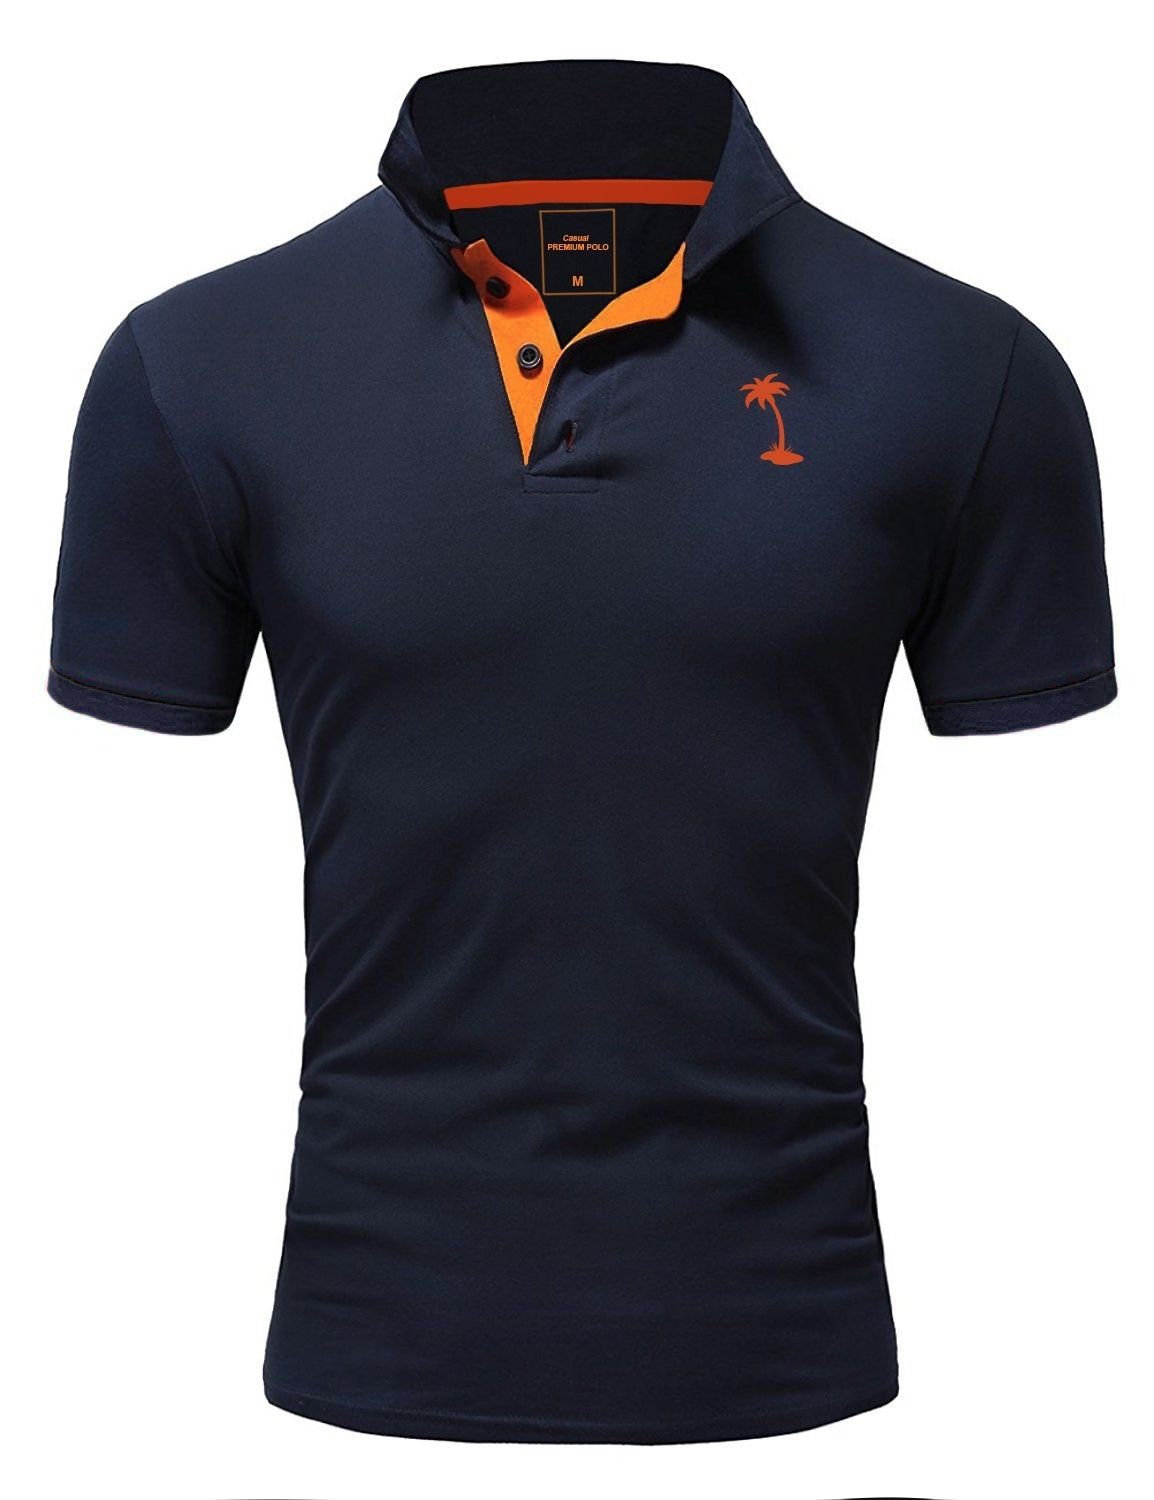 behype Poloshirt PALMSON mit kontrastfarbigen Details dunkelblau-orange